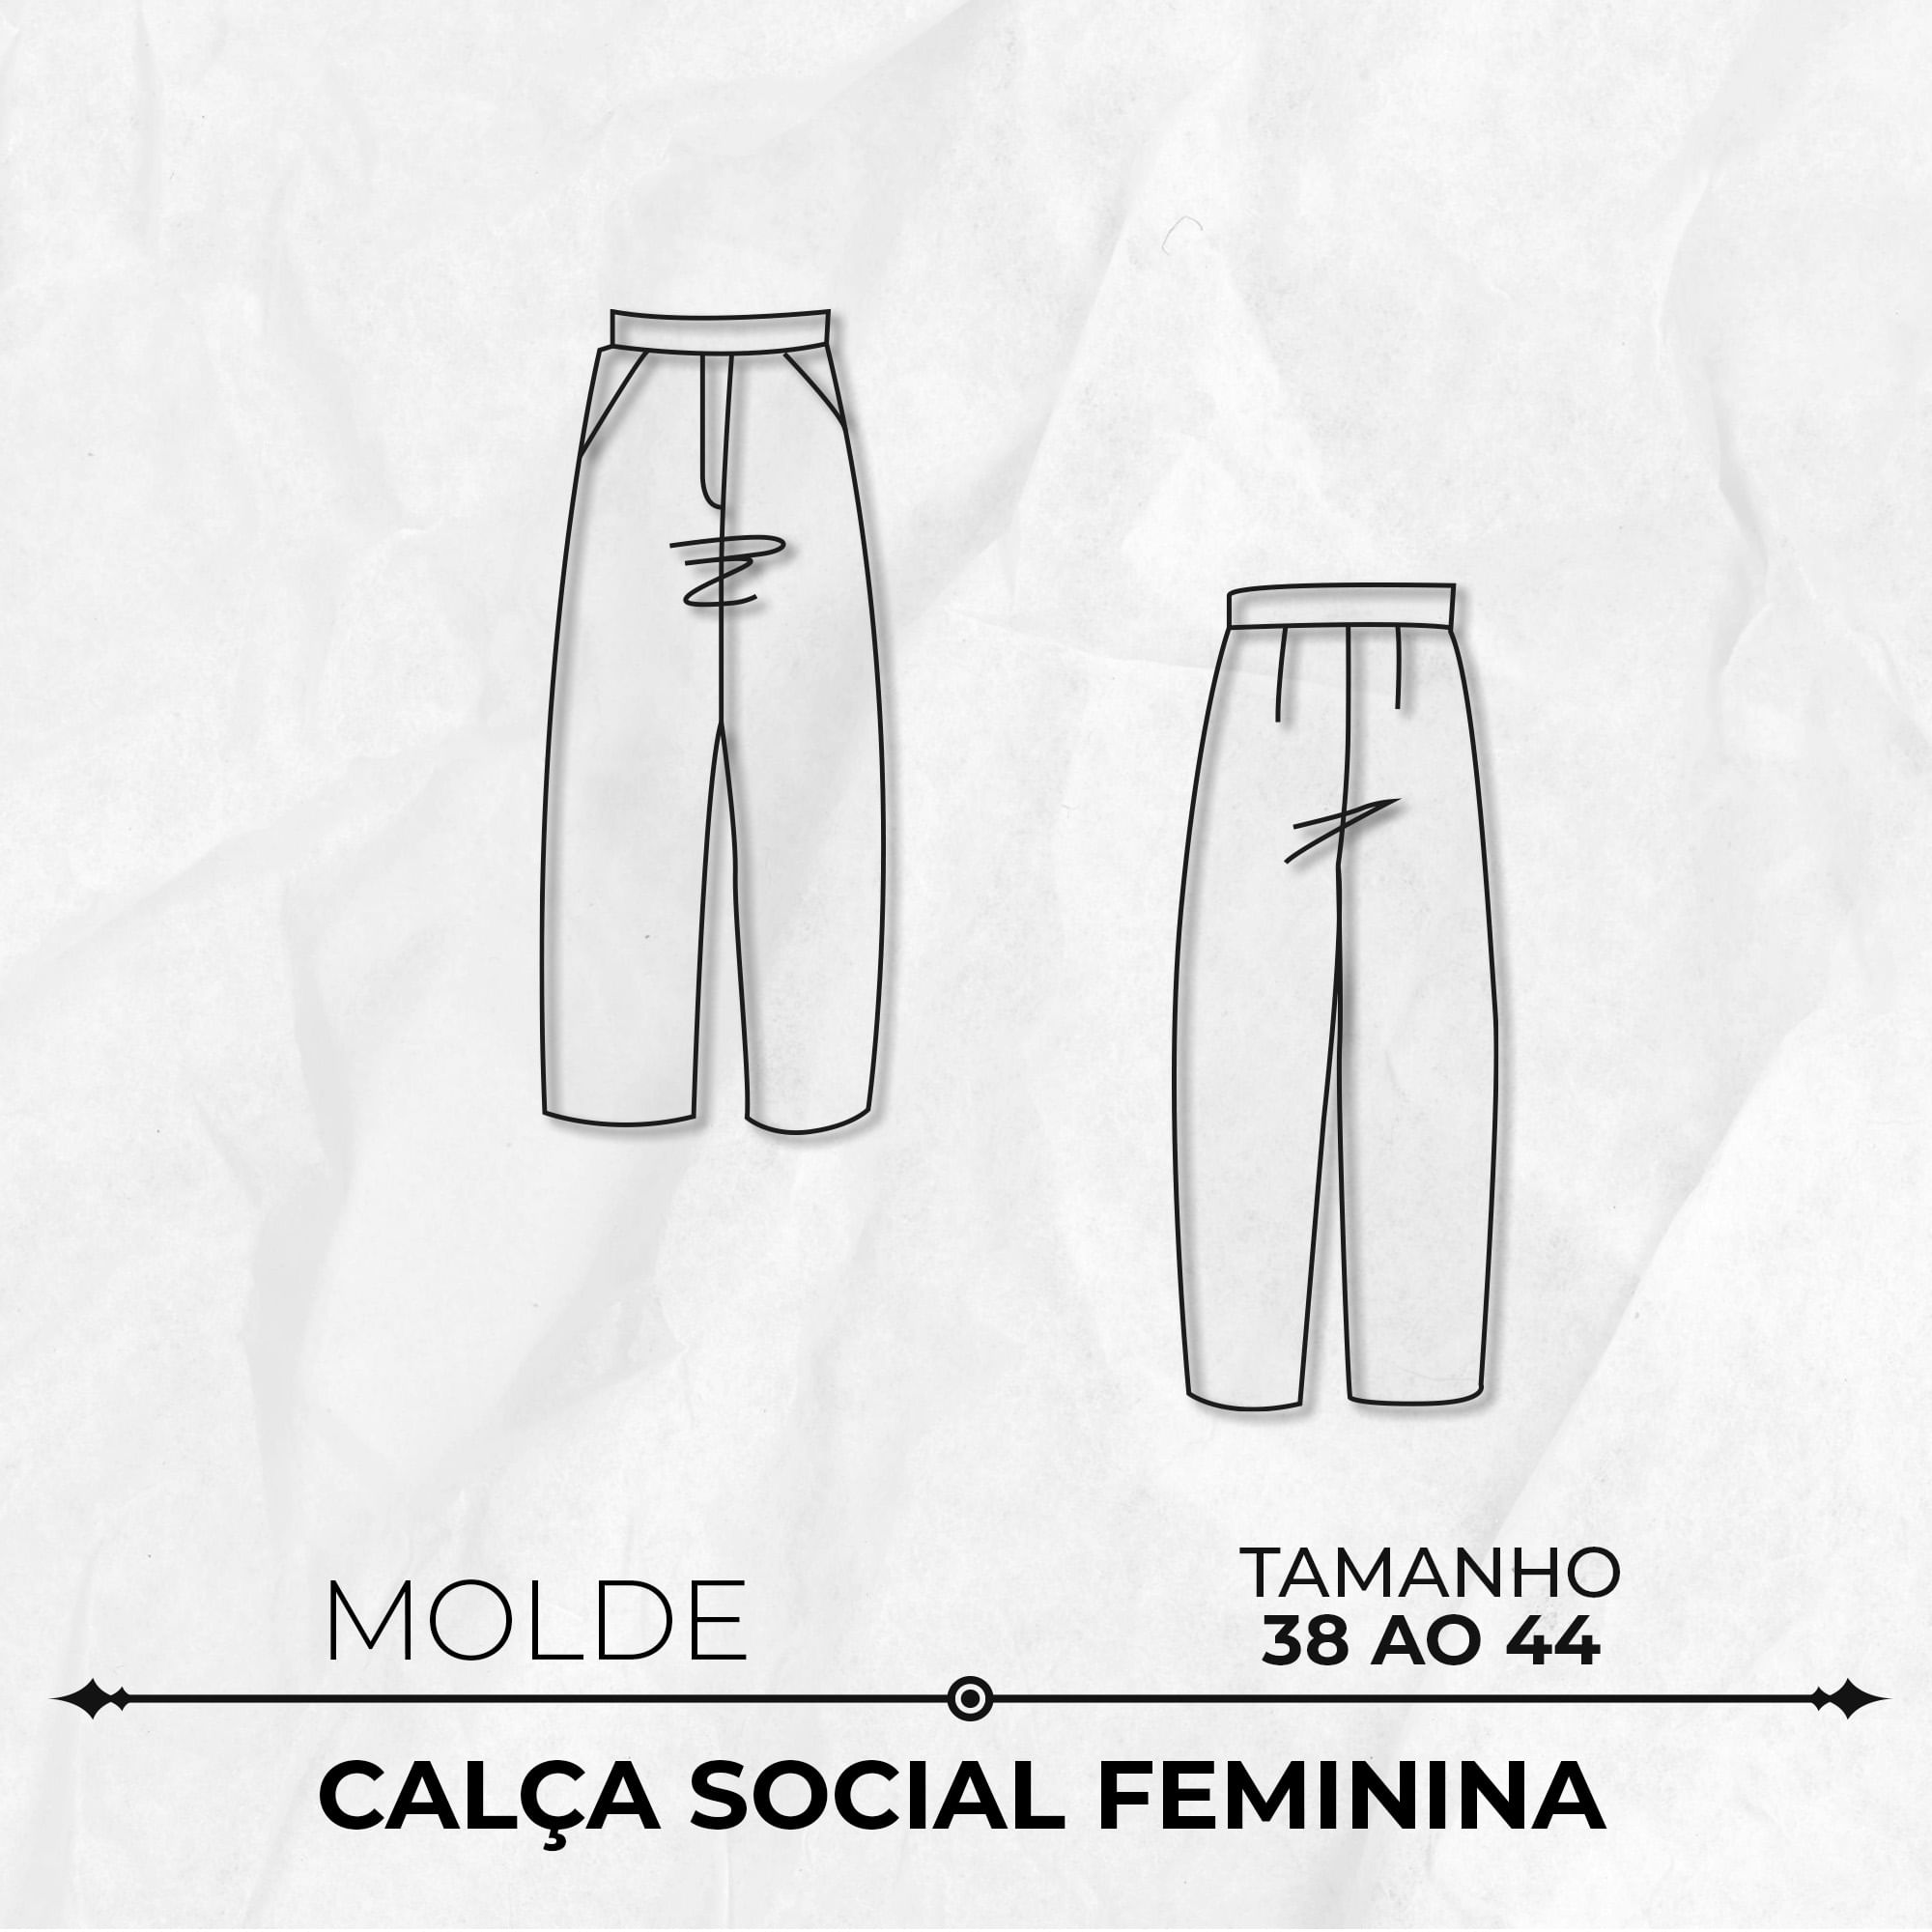 Molde de calça social feminina tamanho 38 ao 44 by Marlene Mukai